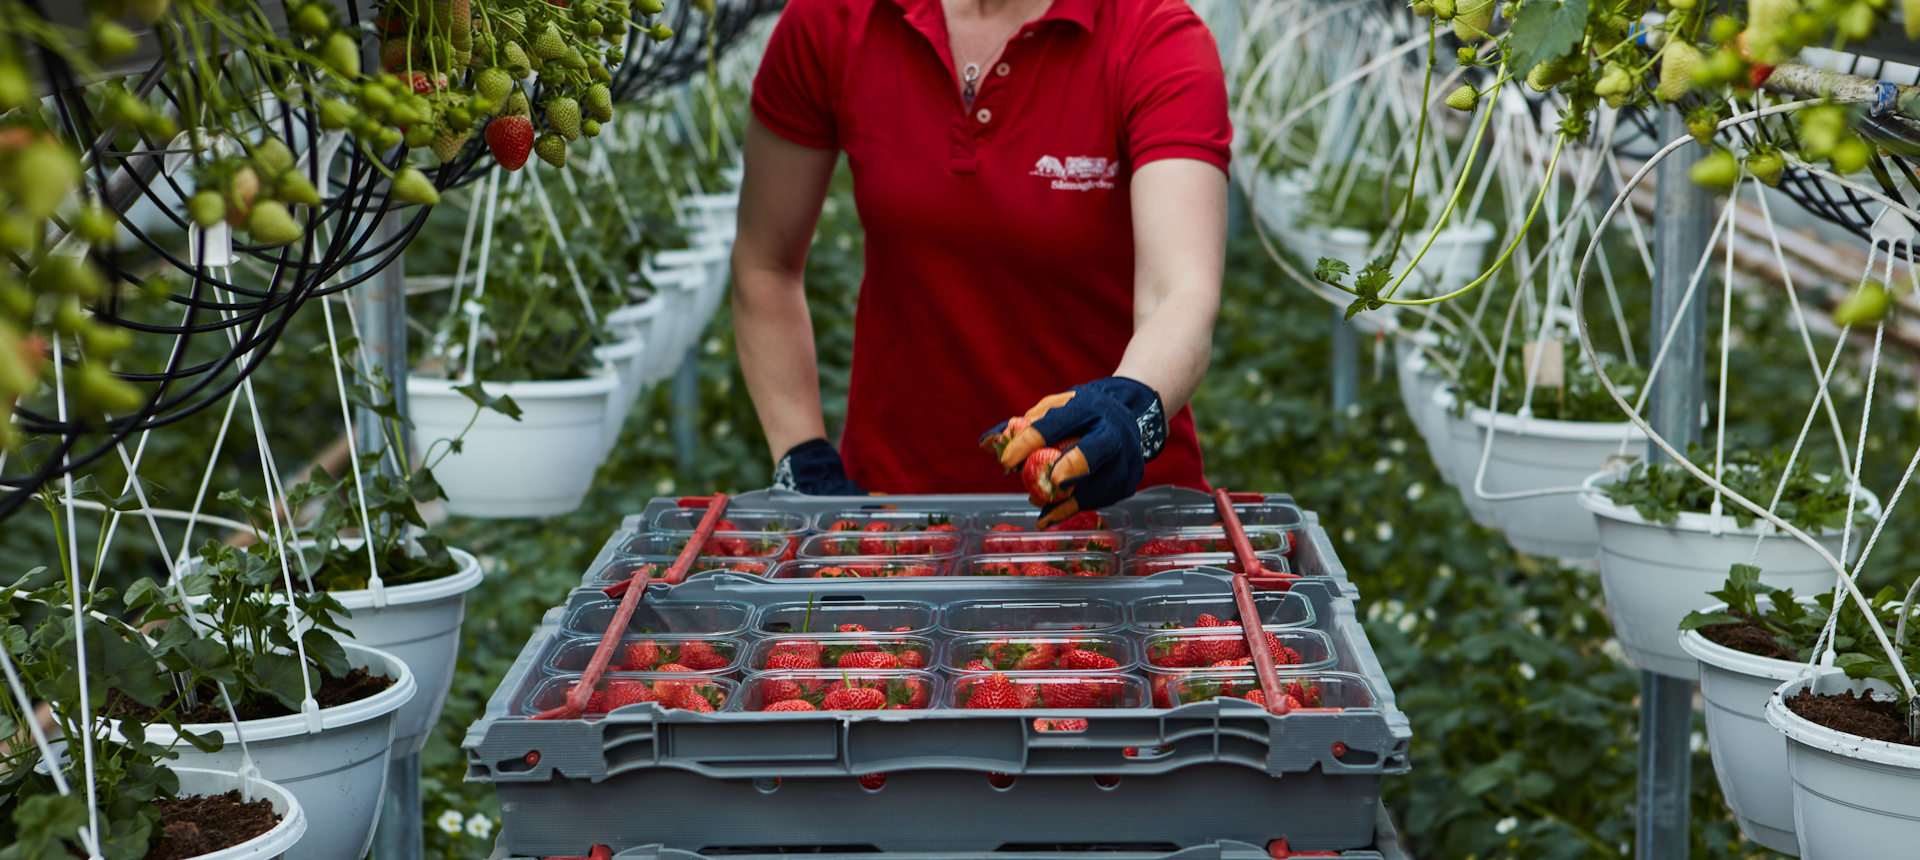 Bild från jordgubbsodling i växthus. Hängande krukor med jordgubbsplantor. Jordgubbar packade i lådor. 